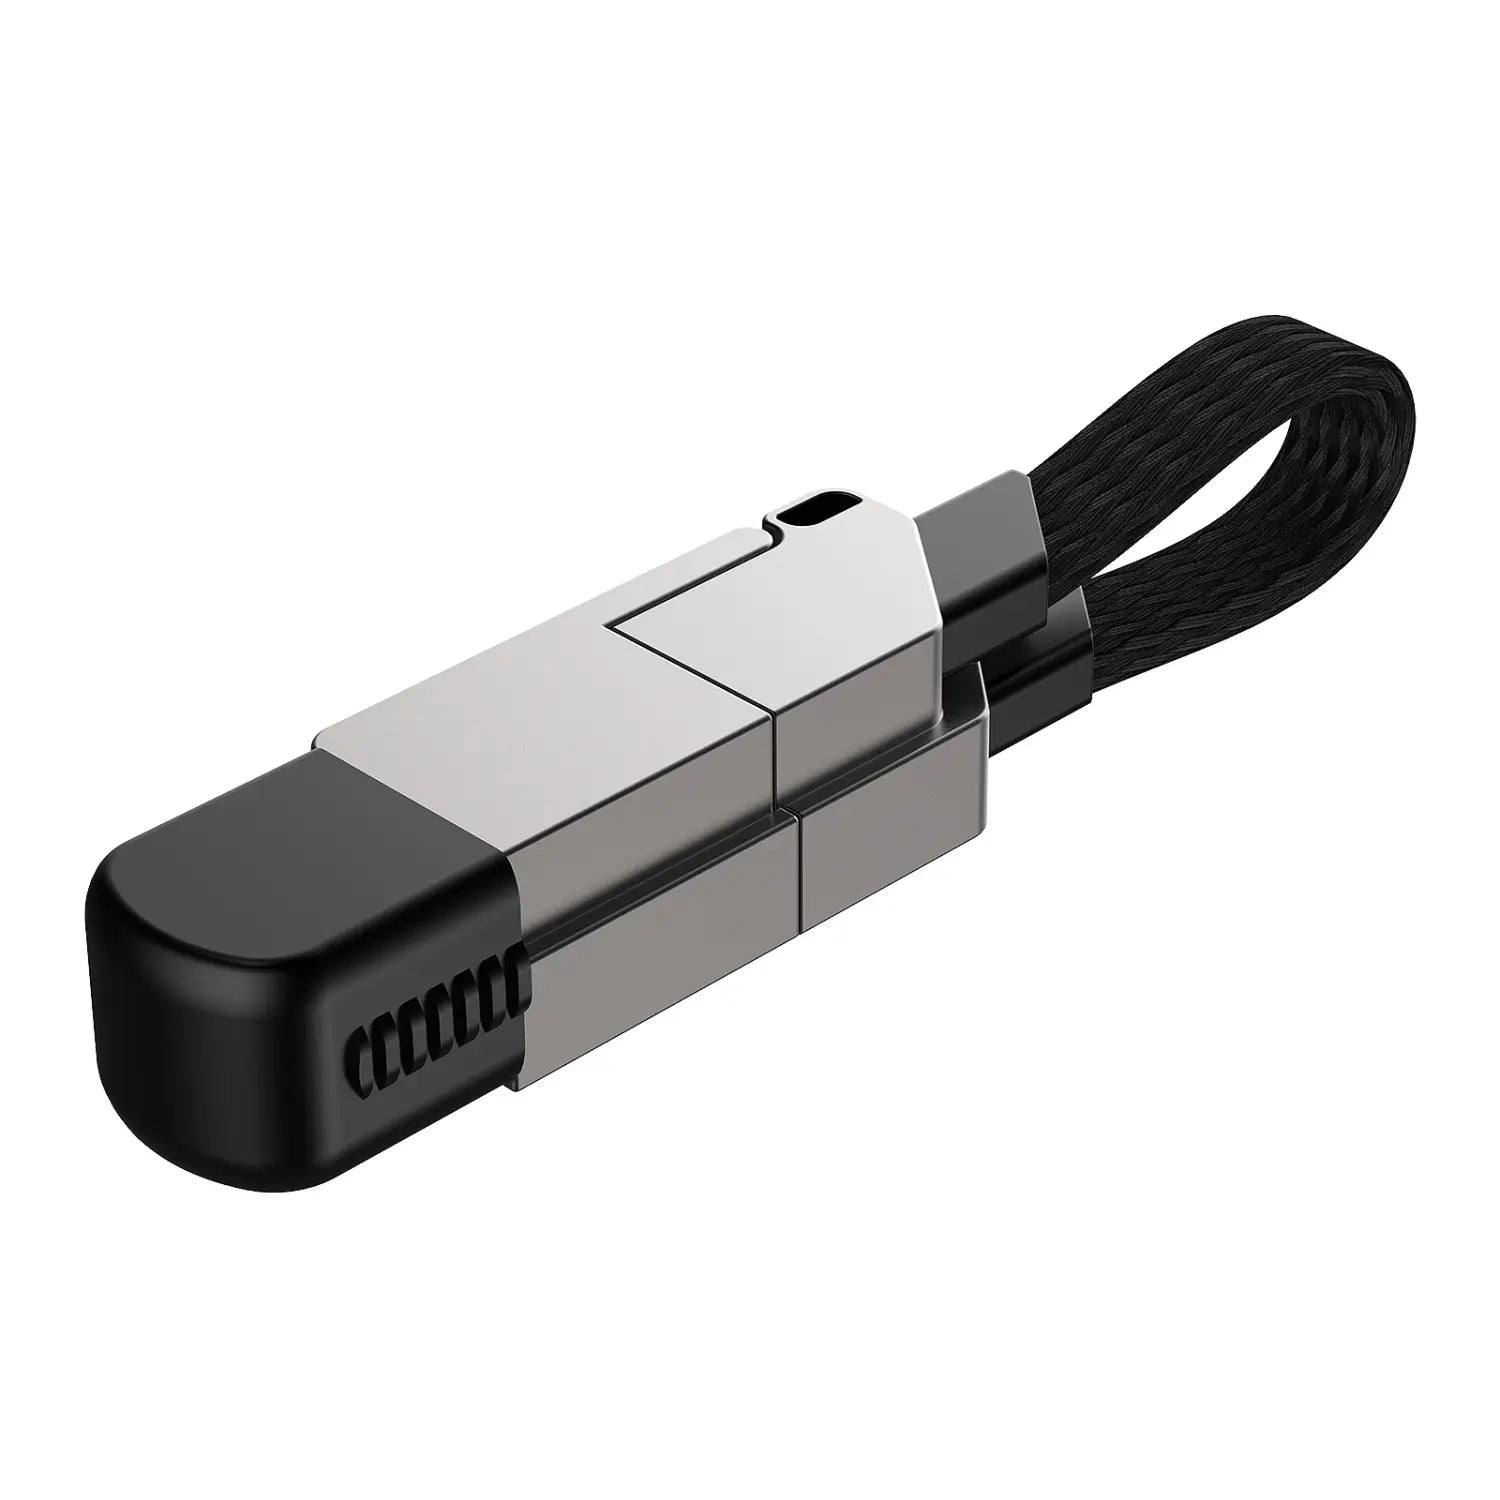 Saber-wire Portable Keychain